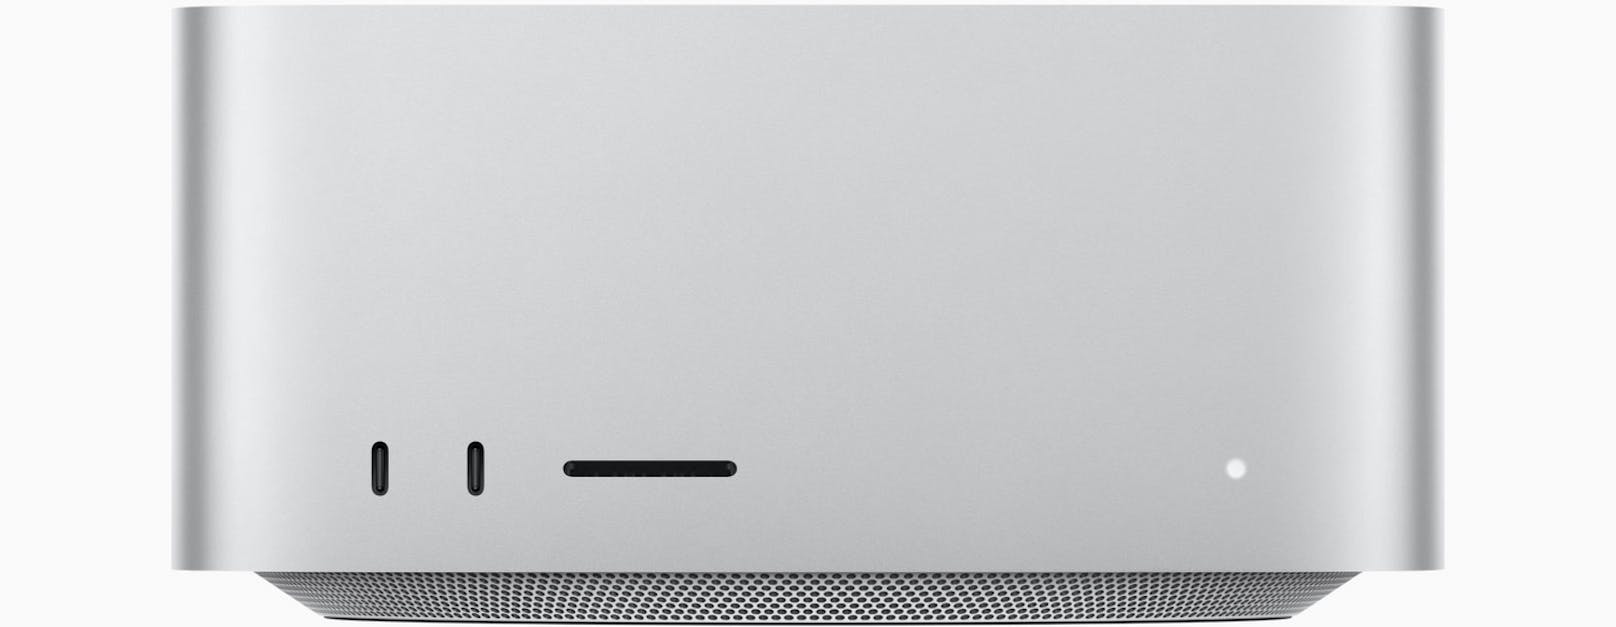 Der M1-Ultra-Mac soll bei grafisch sehr intensiven Anwendungen glänzen, verspricht Apple. So lassen sich etwa gleichzeitig 18 8K-ProRes-422-Streams wiedergeben.